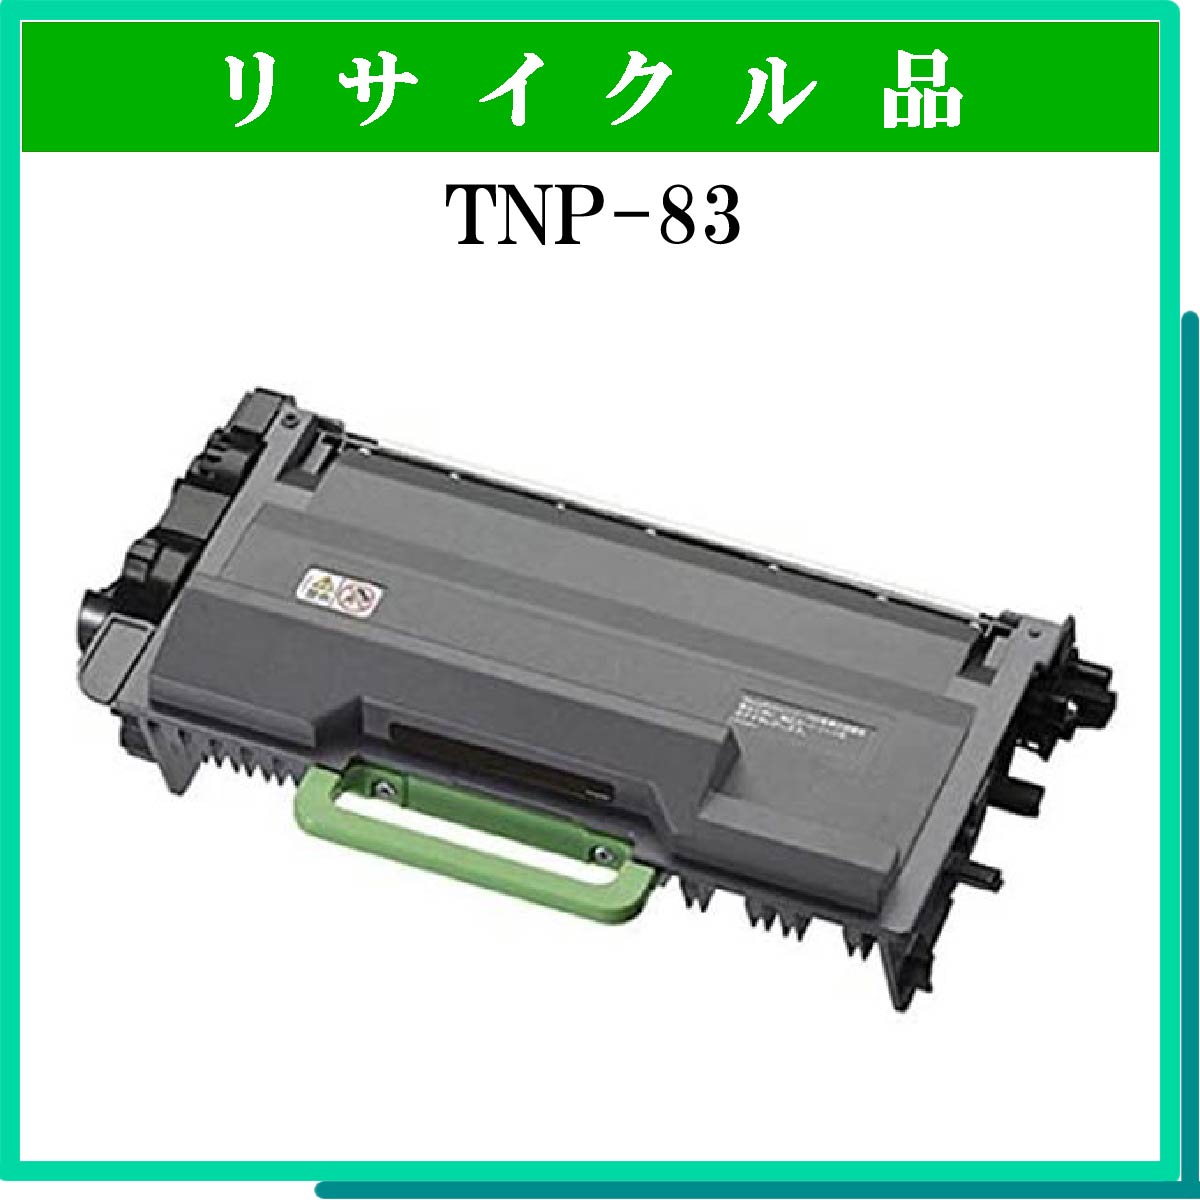 TNP-83